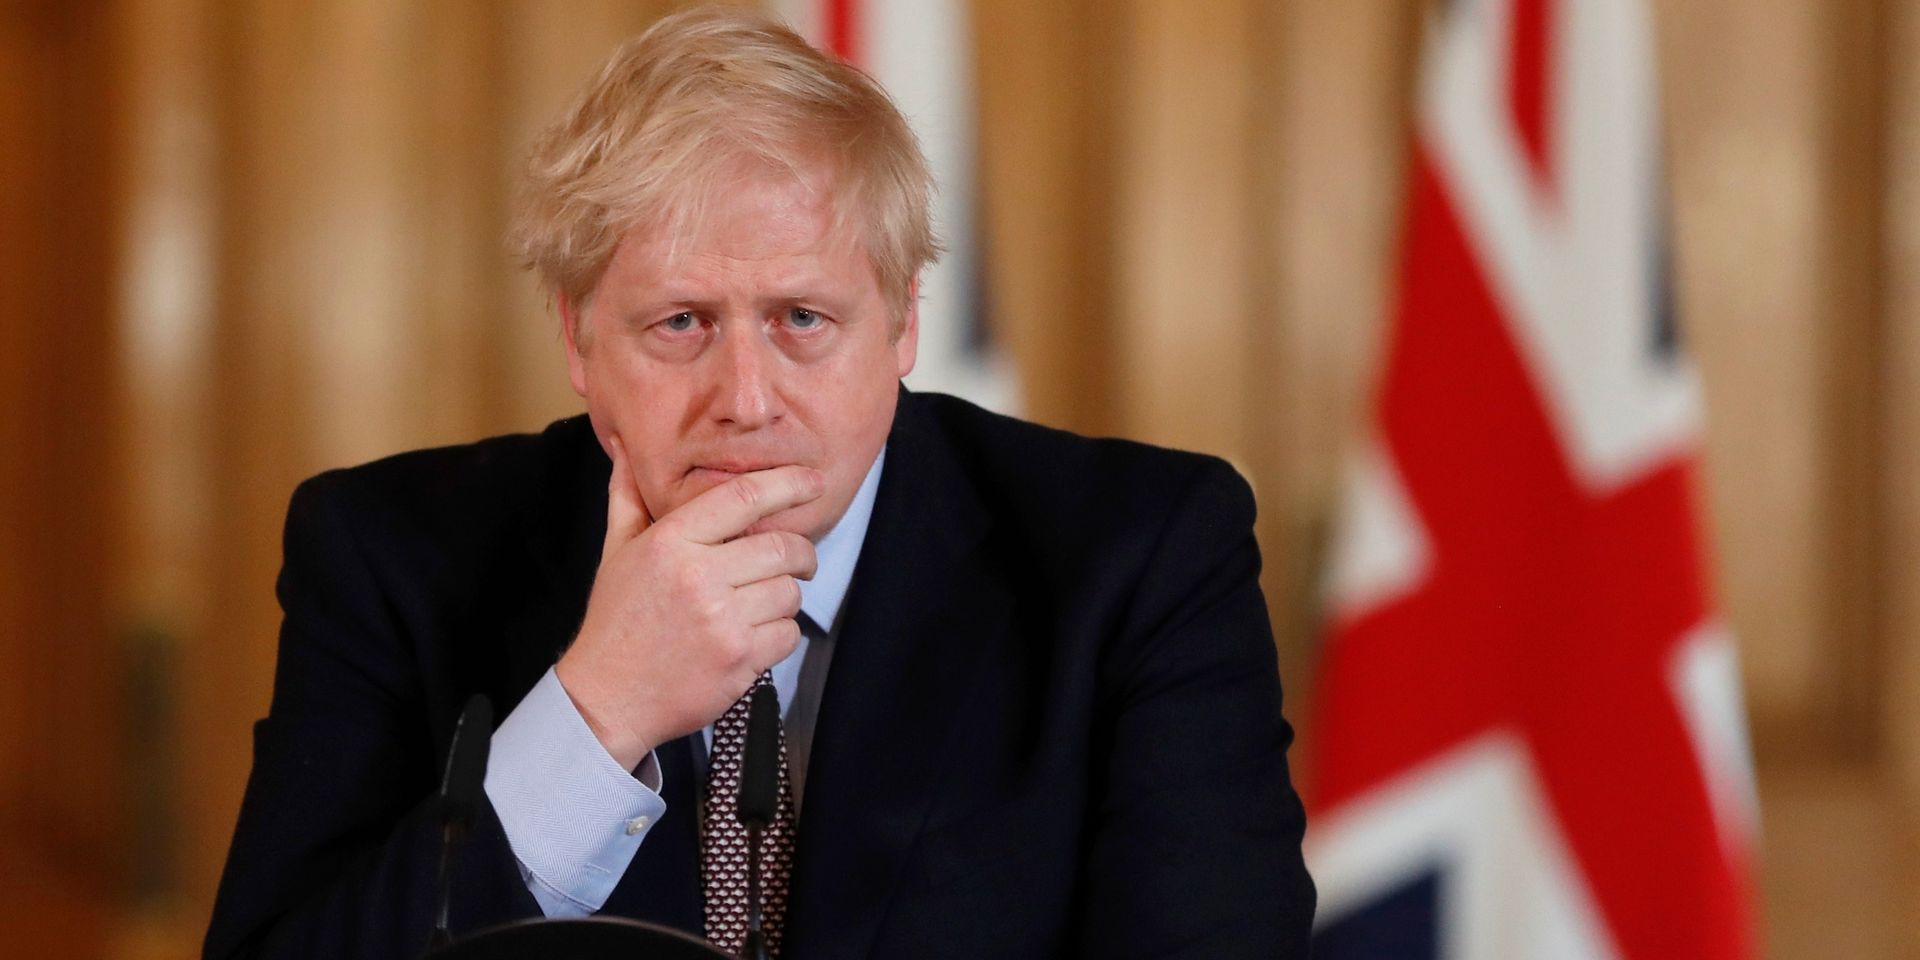 بالفيديو : رئيس الوزراء البريطاني يُعلن إصابته بفيروس كورونا